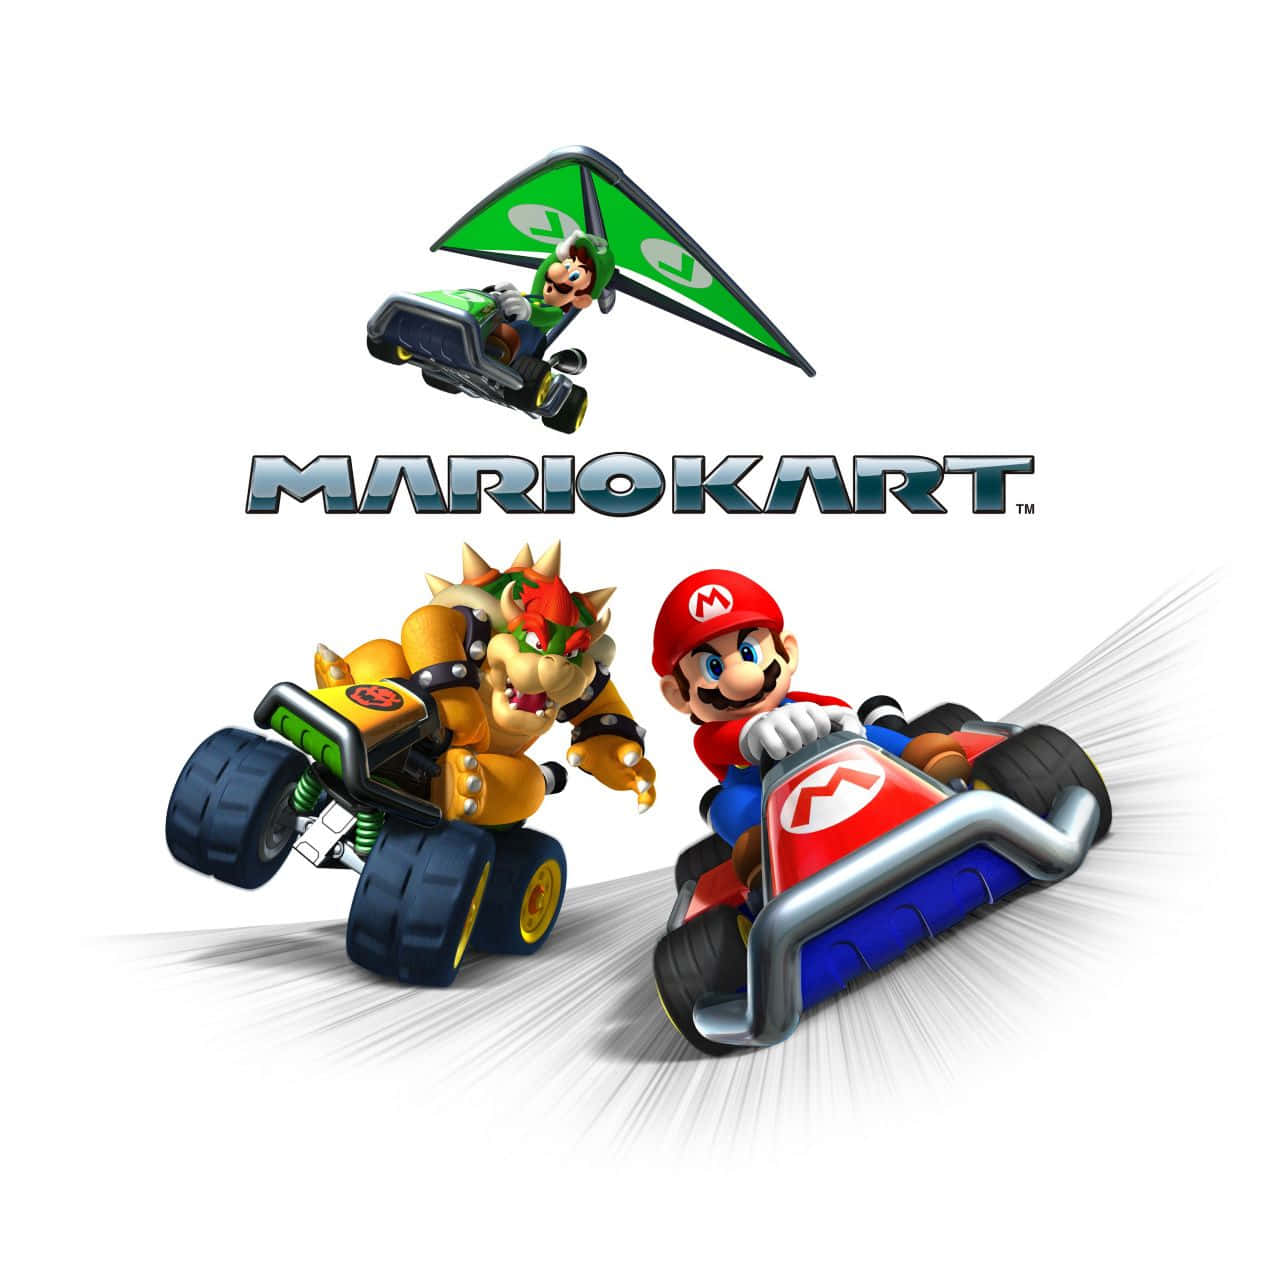 Fartrundt På Nintendos Baner Med Mario Kart!